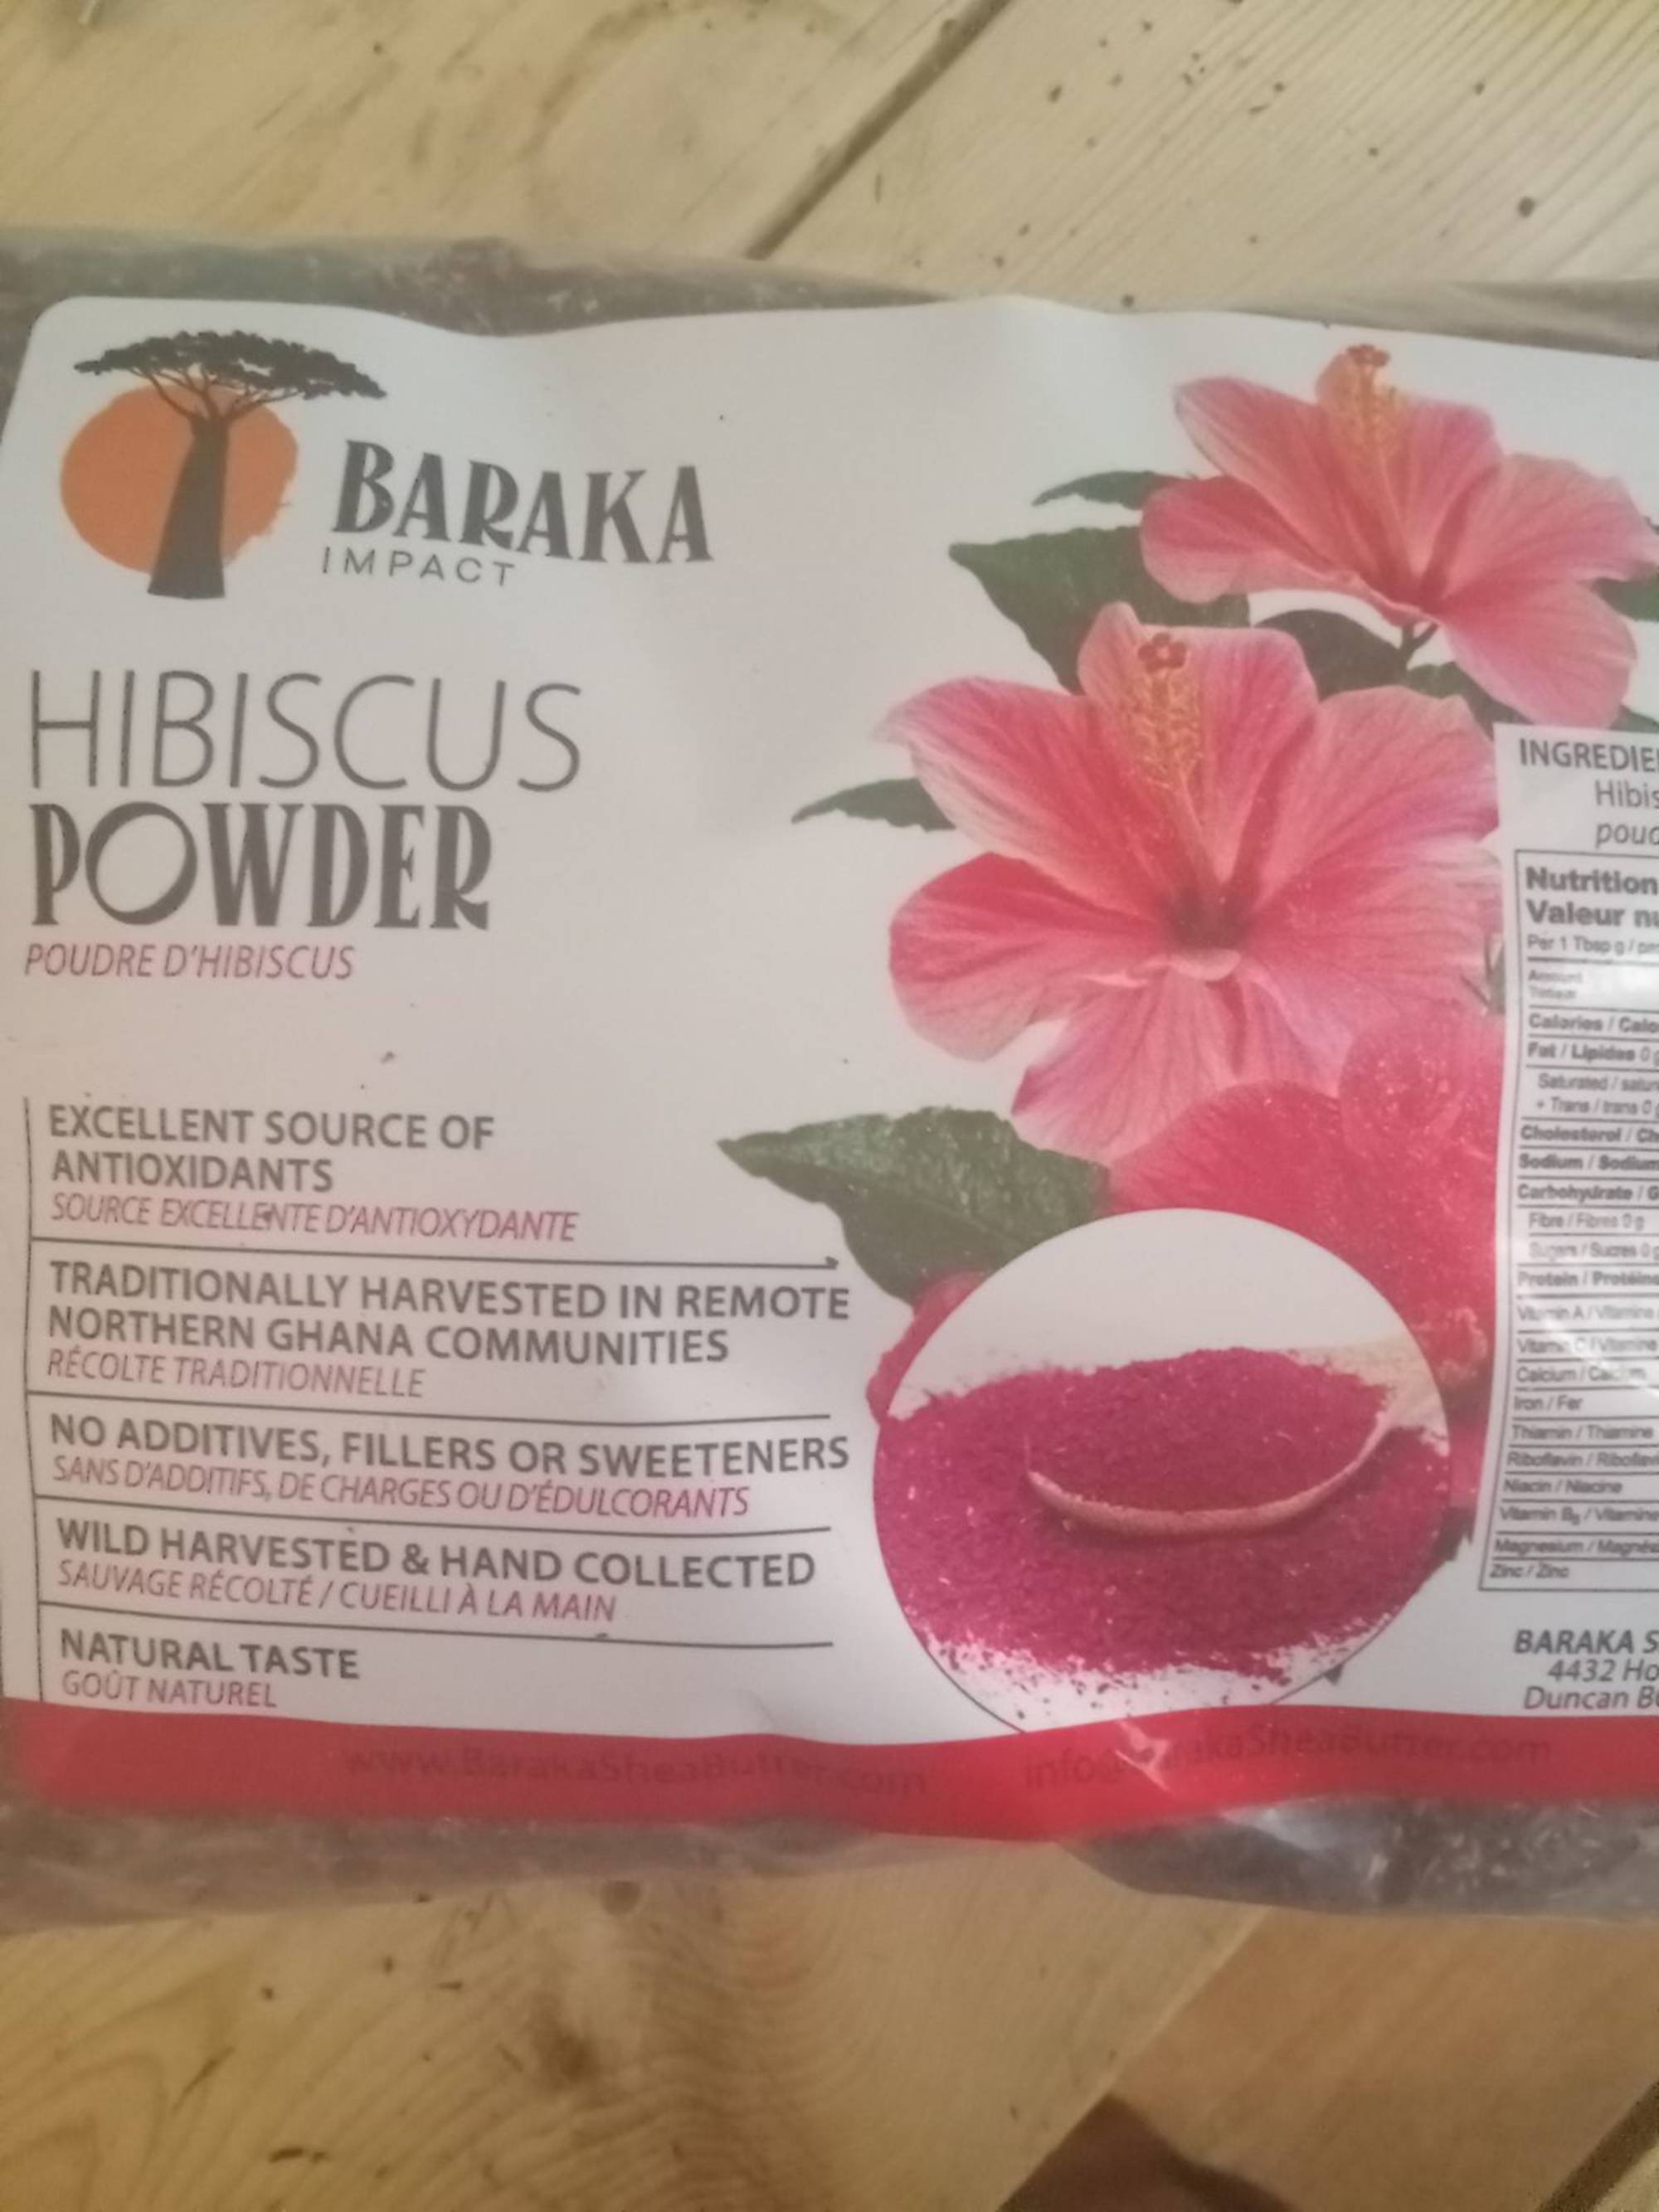 Hibiscus Flower Powder – Purna Tatva